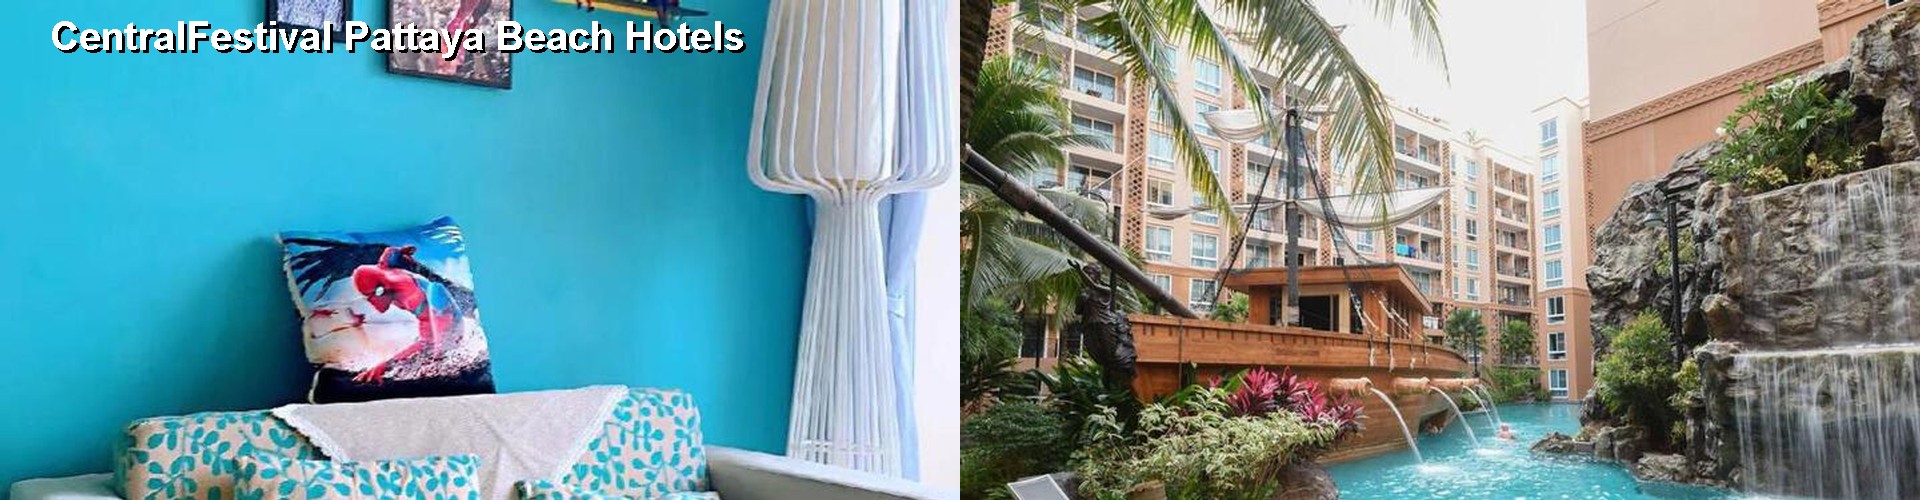 5 Best Hotels near CentralFestival Pattaya Beach